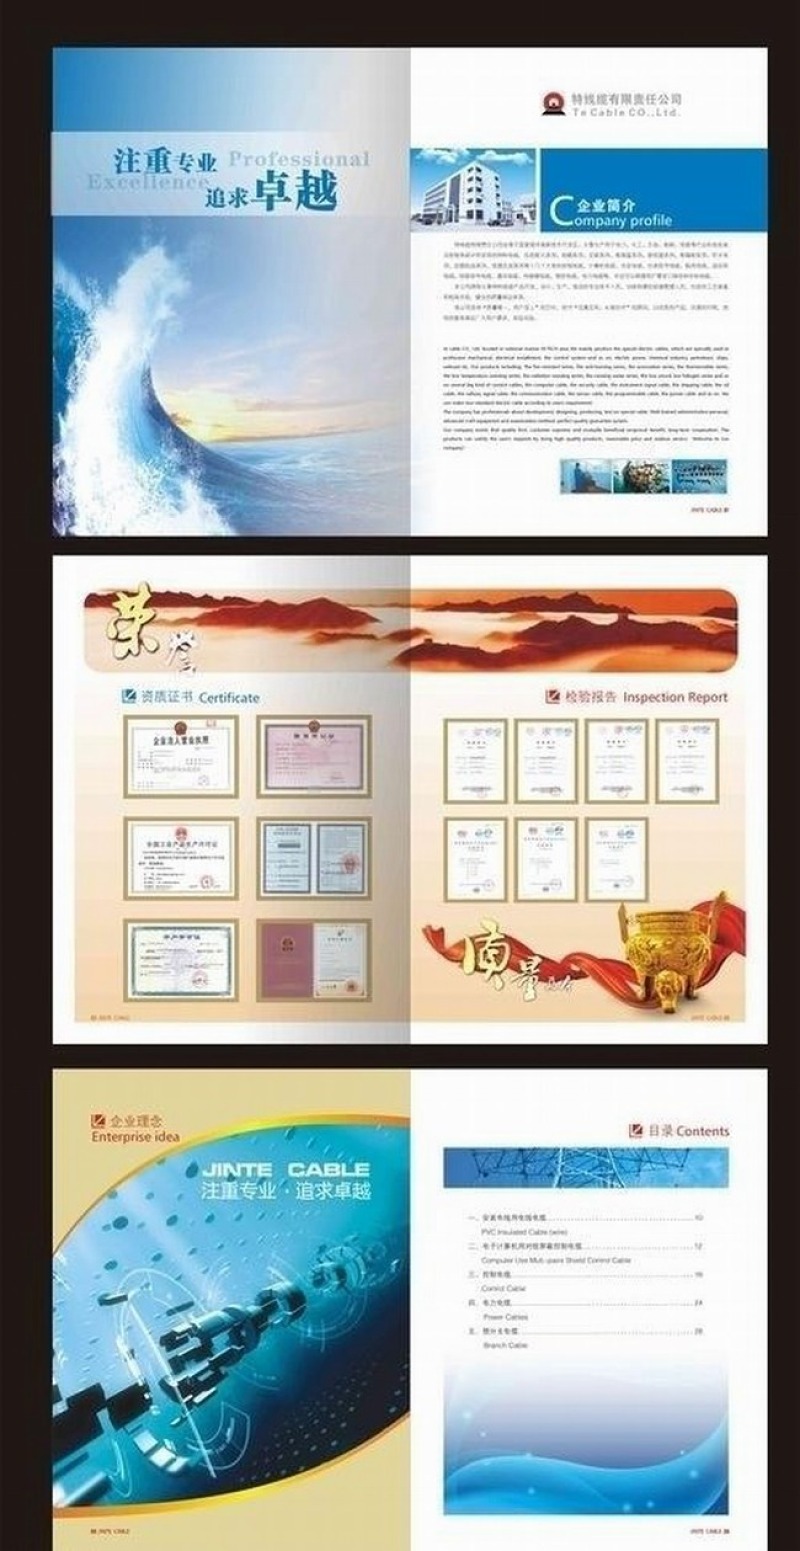 其它证书模板 > 企业宣传册画册荣誉展示介绍矢量模板  【图片,文字